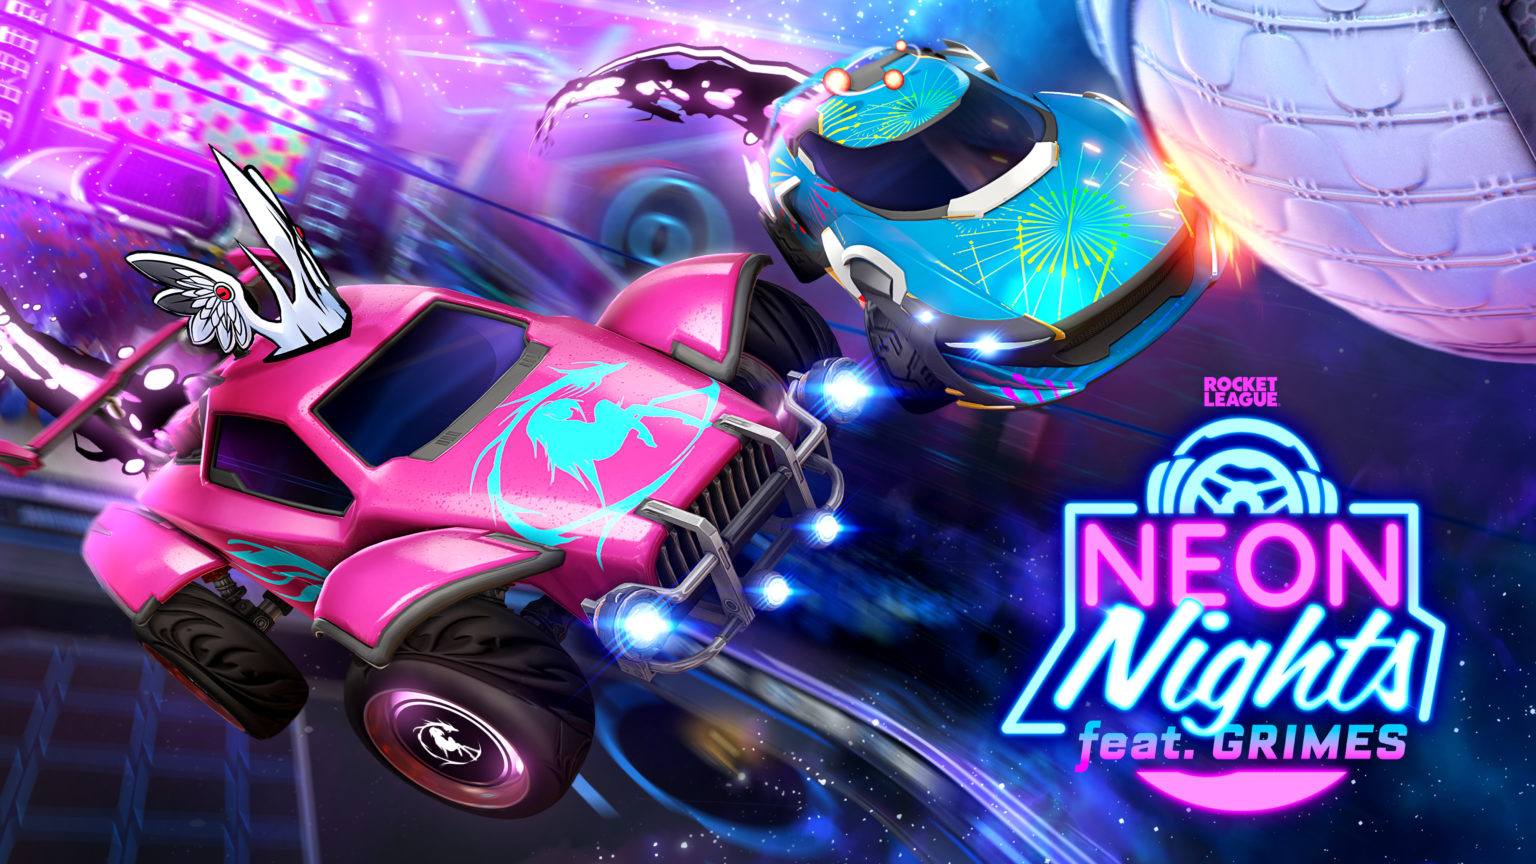 L'evento Neon Nights Rocket League si concentra anche sulla musica in collaborazione con Grimes!